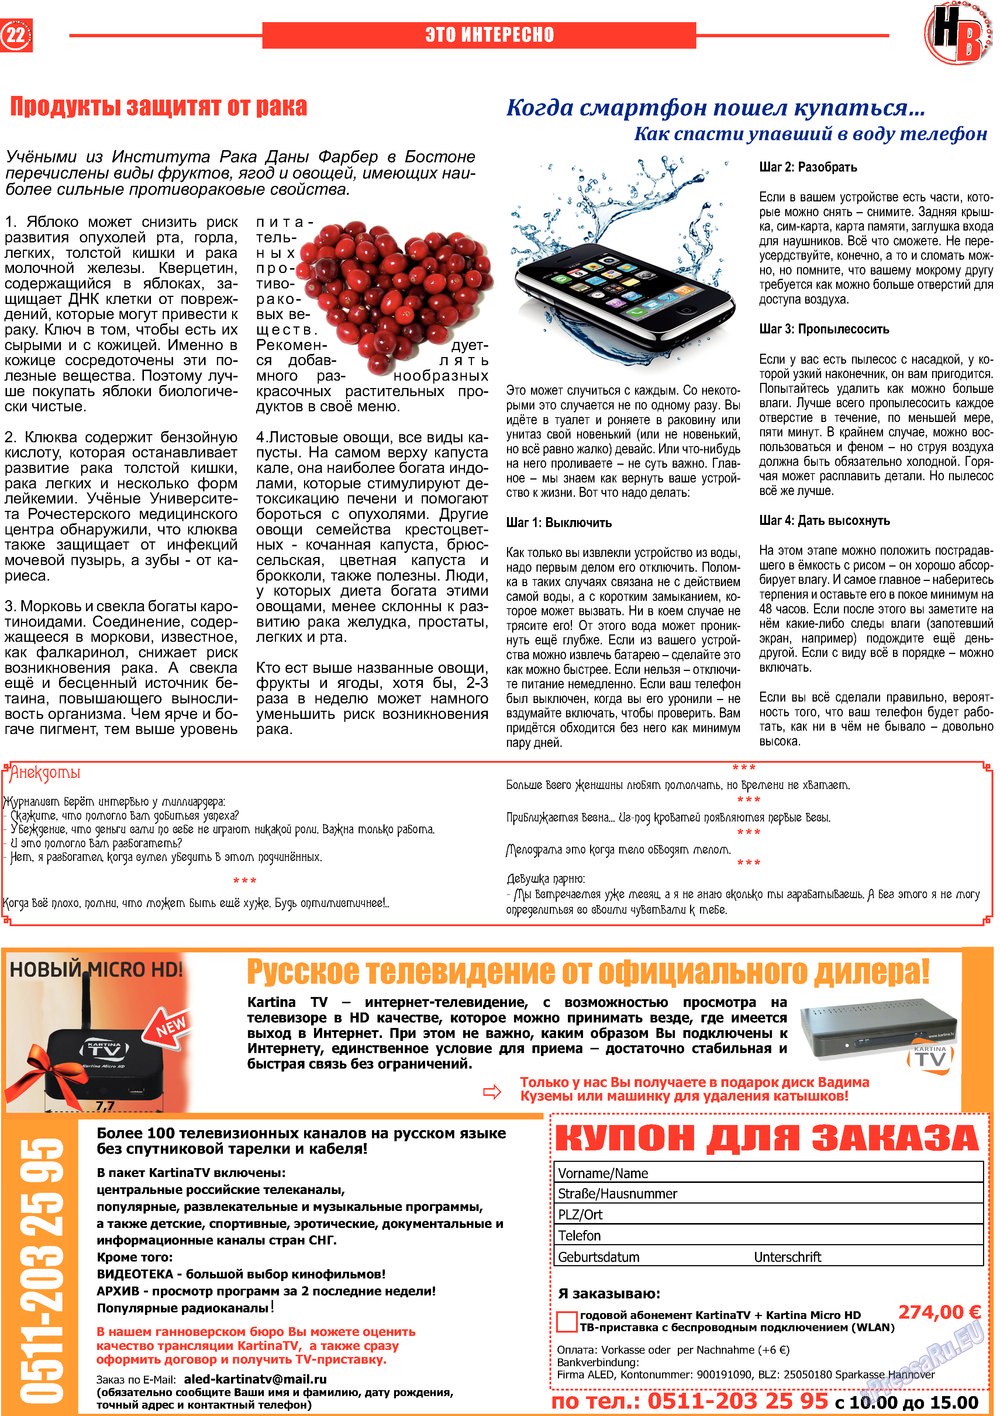 Наше время, газета. 2013 №4 стр.22